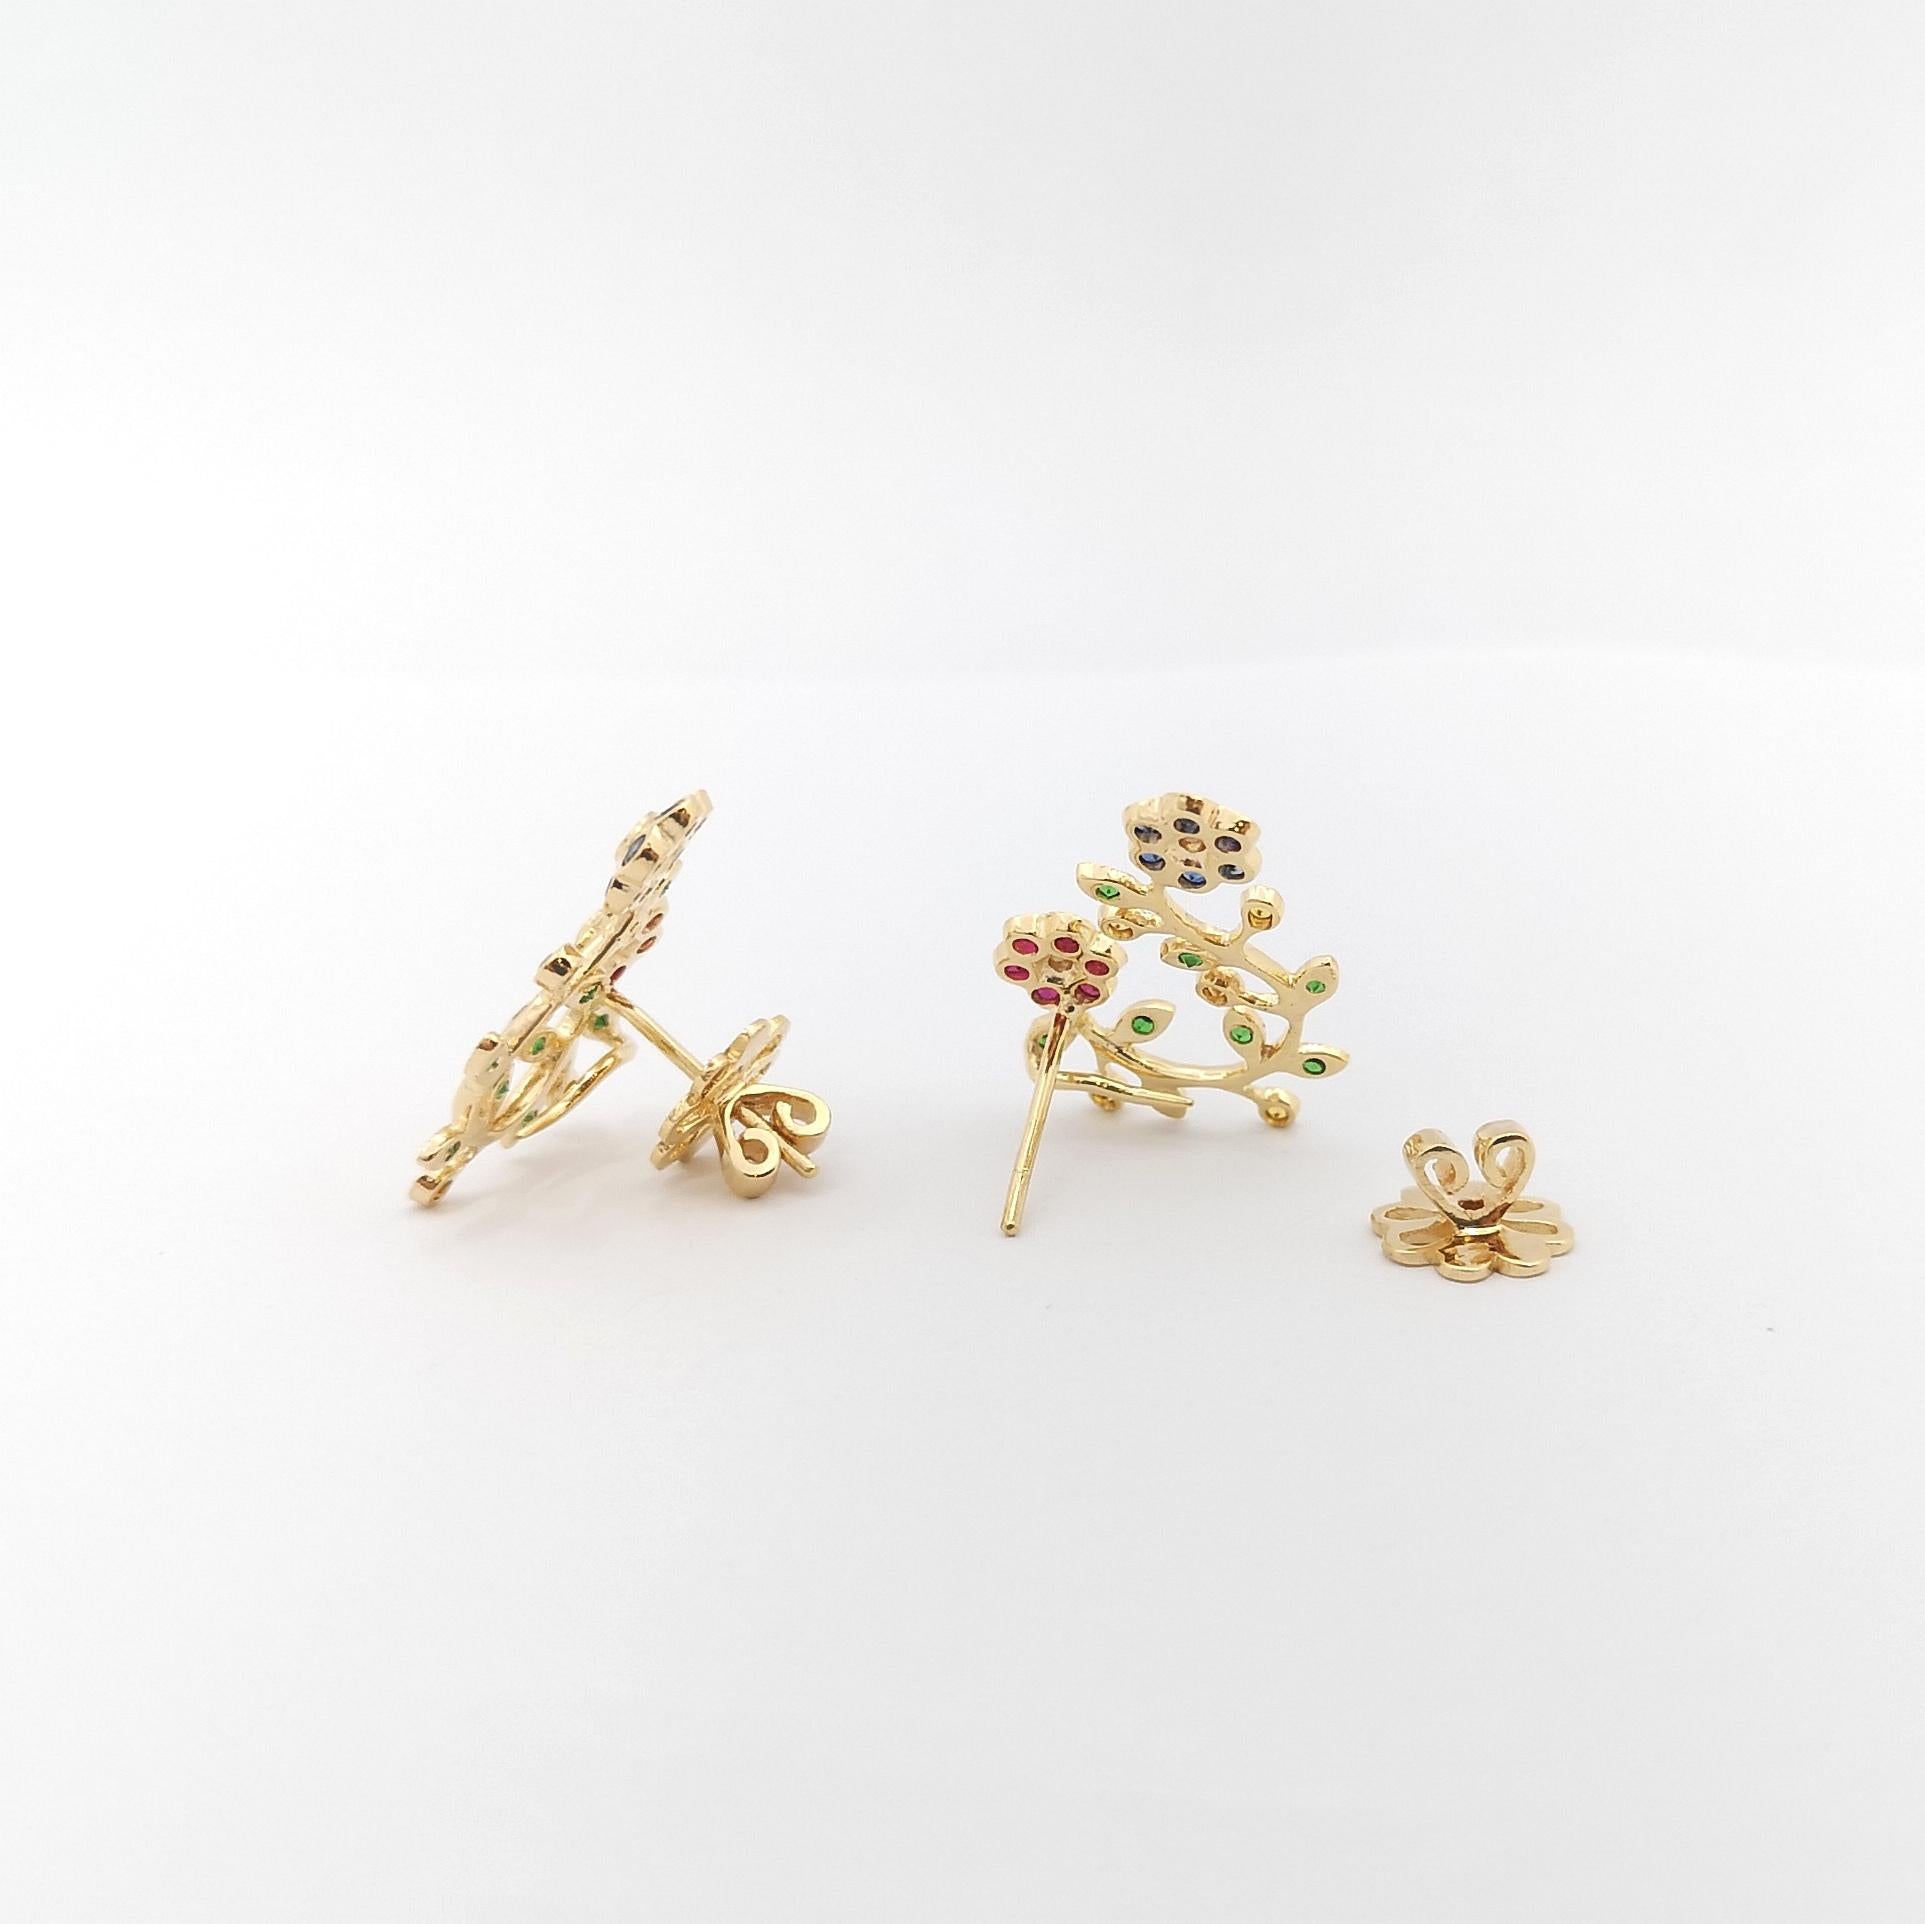 Ruby, Blue Sapphire, Yellow Sapphire, Tsavorite, Diamond Earrings in 18K Gold For Sale 2